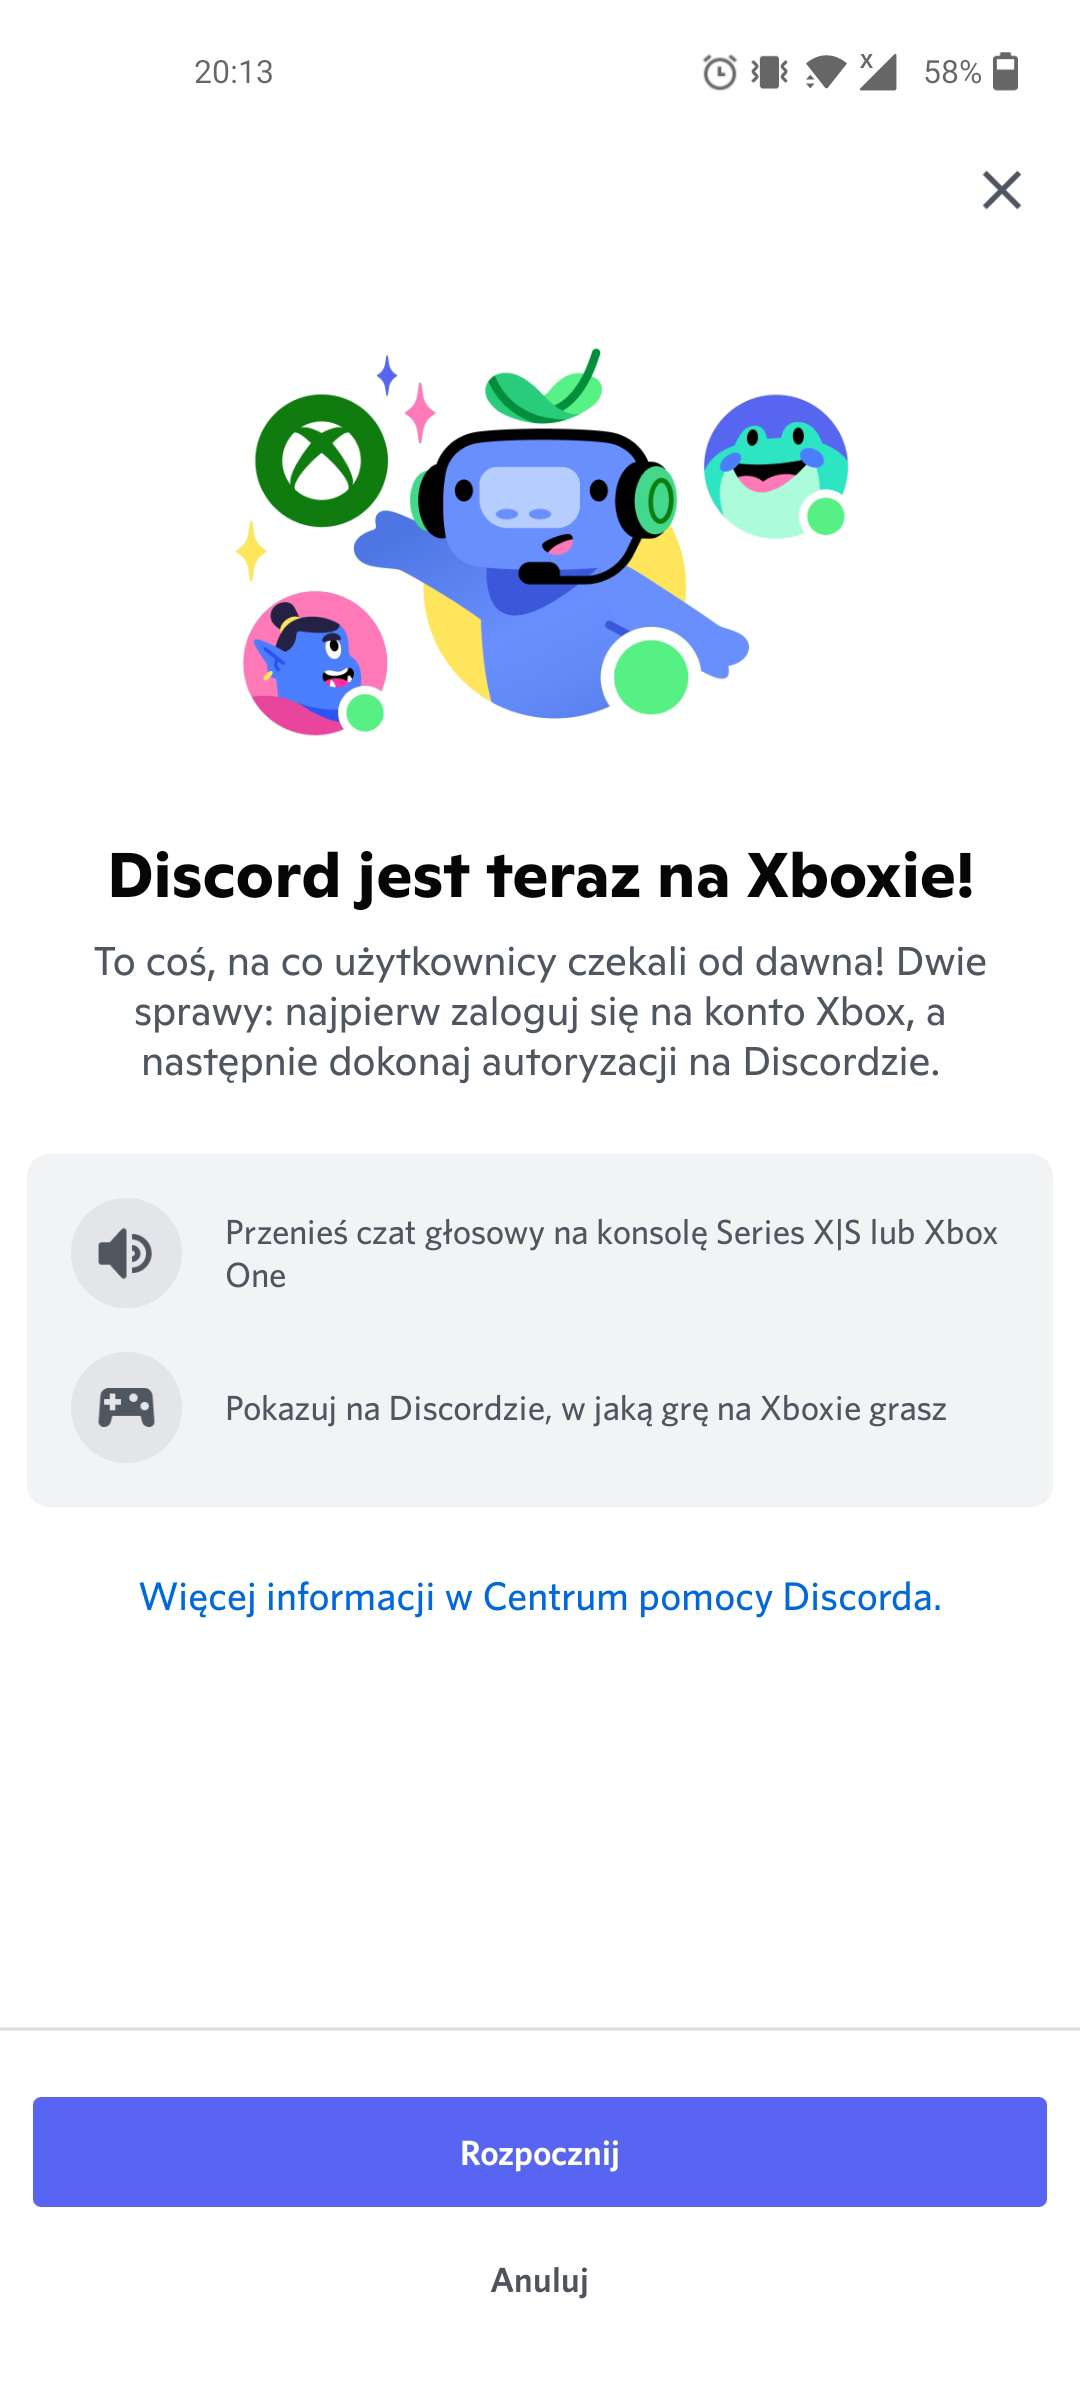 Chat głosowy Discorda jest już dostępny dla wszystkich na Xbox! Jak z niego skorzystać?